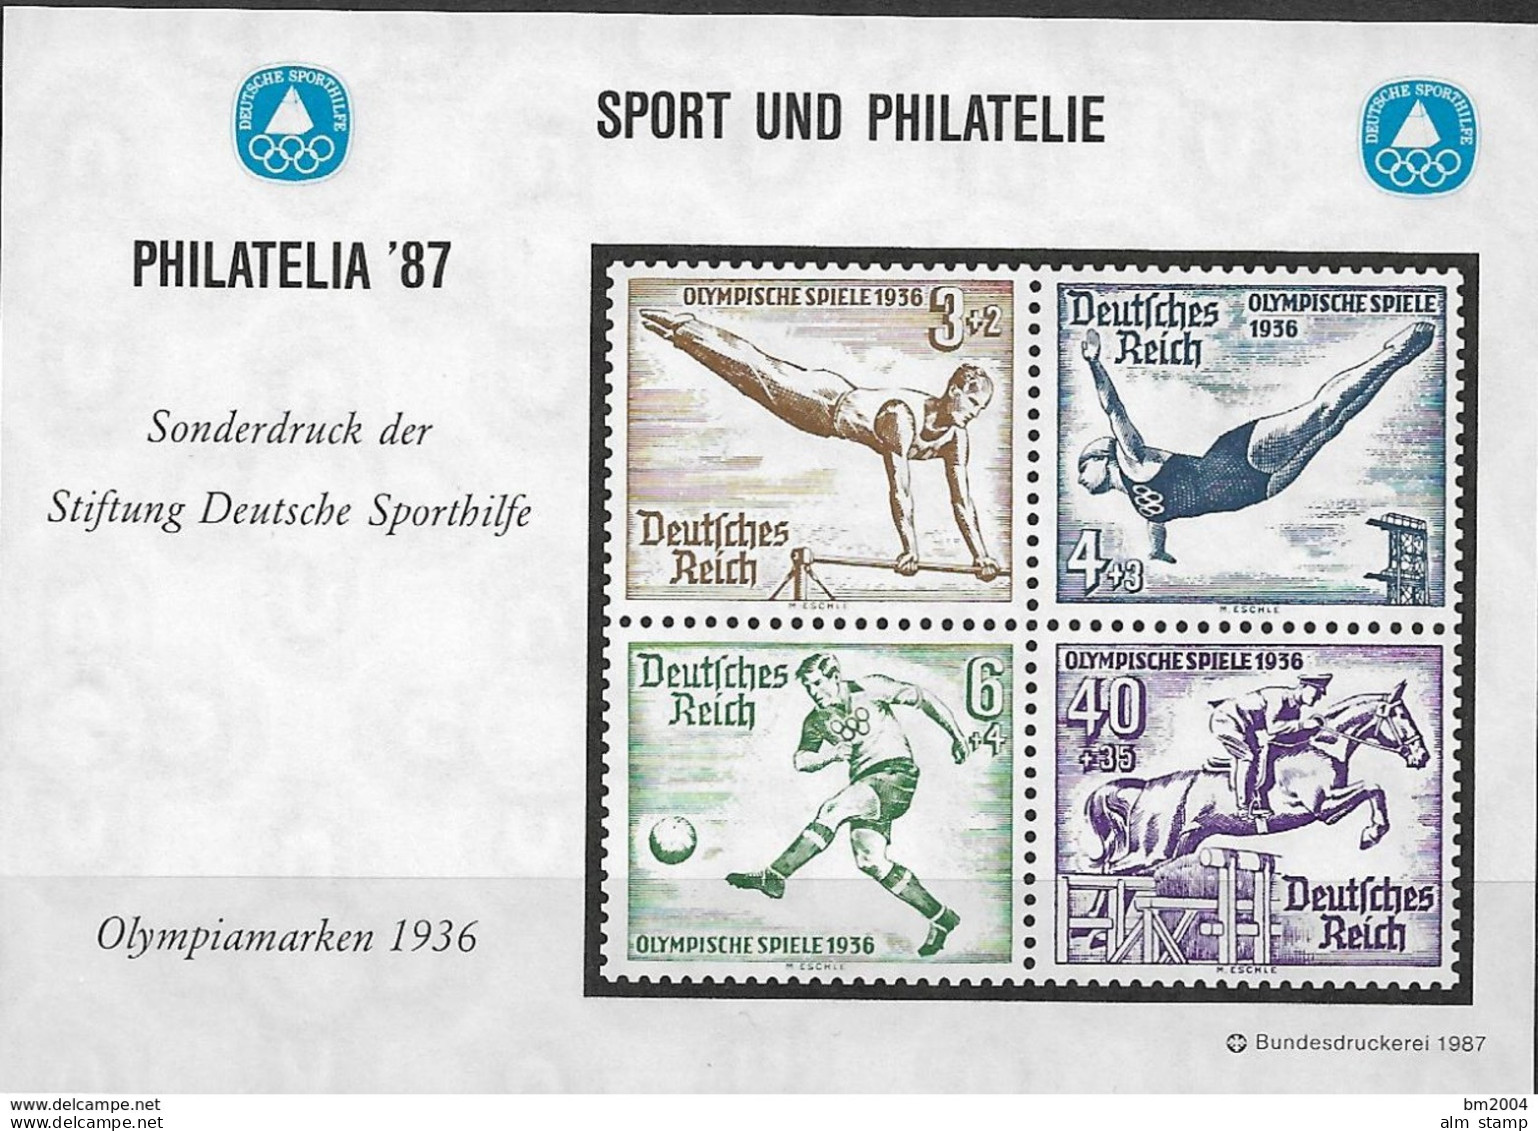 1987 Deutschland Vignette  PHILATELIA '87  " OLYMPIAMARKEN 1936 - Sommer 1936: Berlin